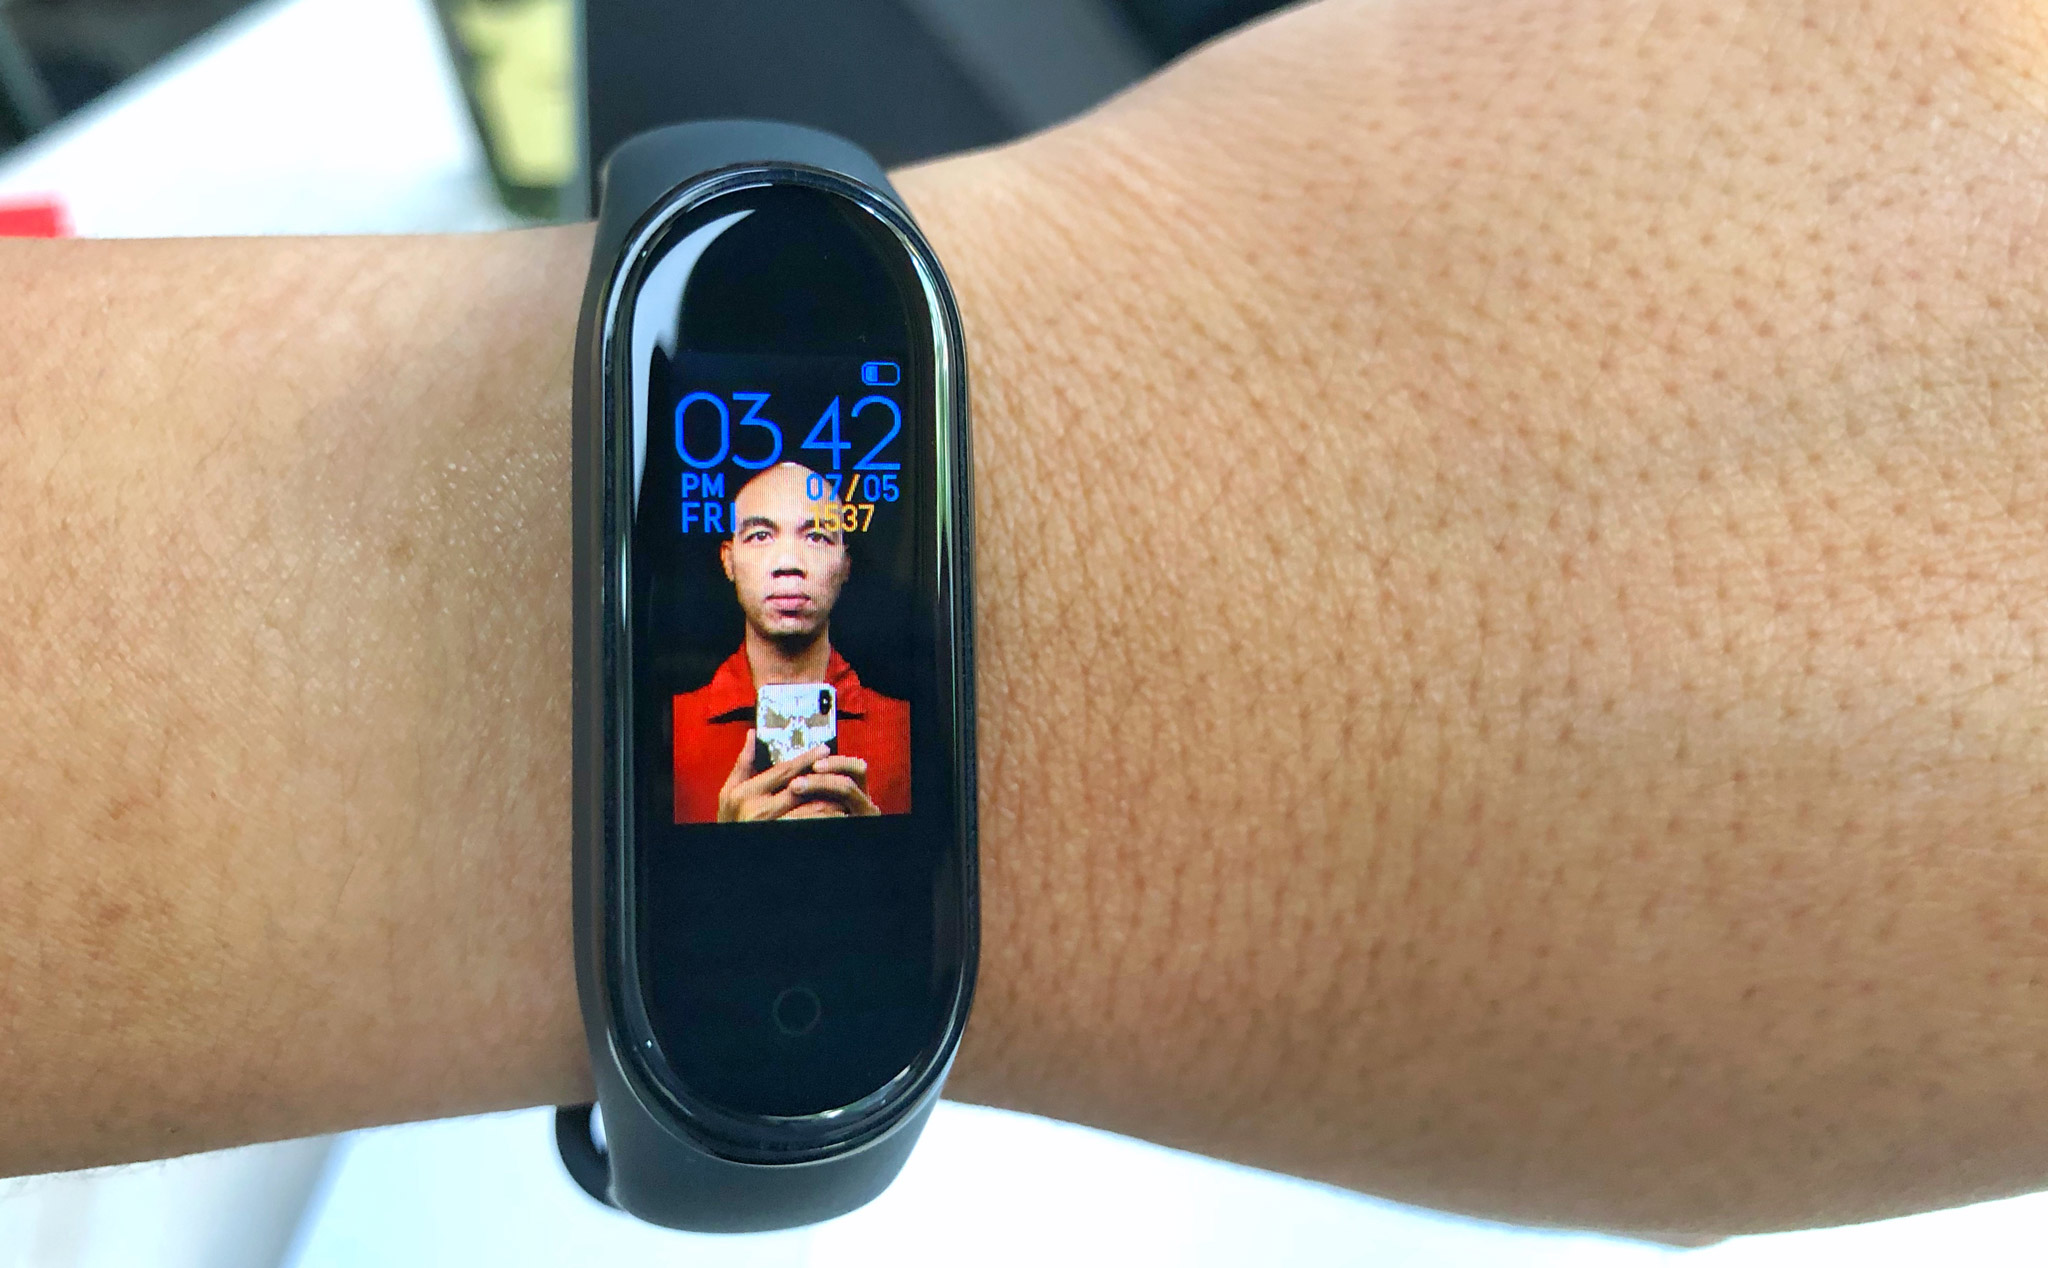 Xiaomi Mi Band 4 là một phụ kiện hoàn hảo cho những ai yêu thích công nghệ và sức khỏe. Hãy xem hình ảnh để khám phá tính năng cực kì đa dạng và tiện ích của chiếc đồng hồ thông minh này.